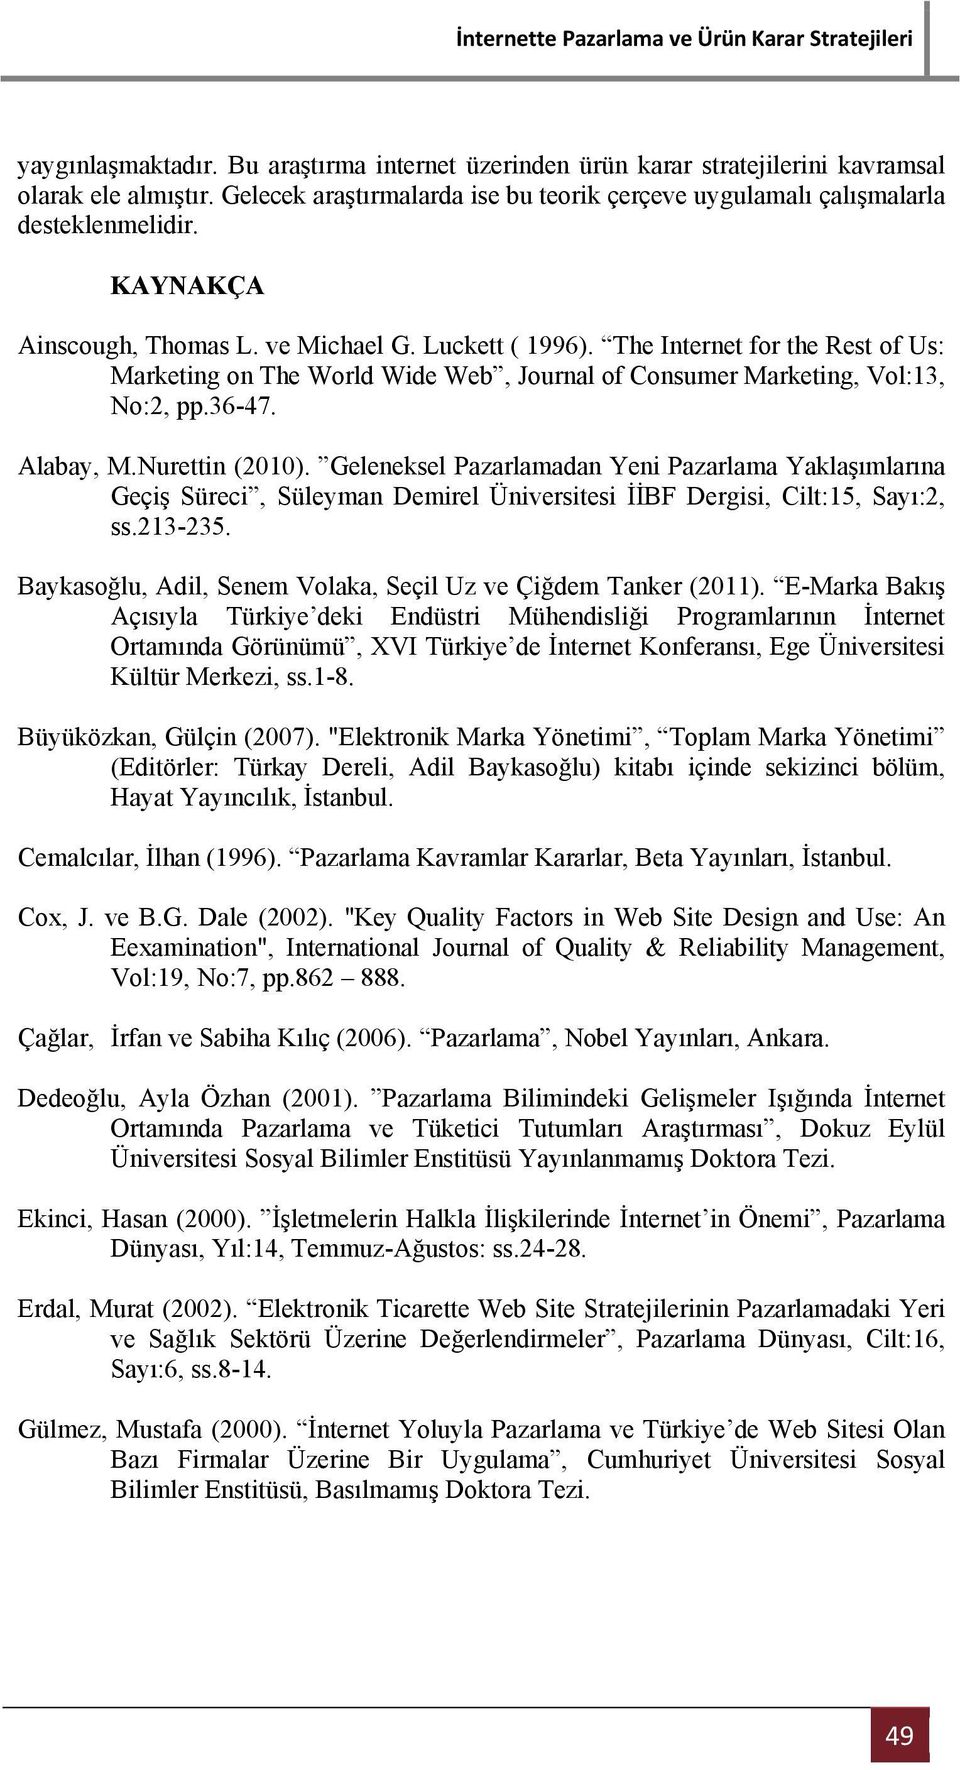 Nurettin (2010). Geleneksel Pazarlamadan Yeni Pazarlama Yaklaşımlarına Geçiş Süreci, Süleyman Demirel Üniversitesi İİBF Dergisi, Cilt:15, Sayı:2, ss.213-235.